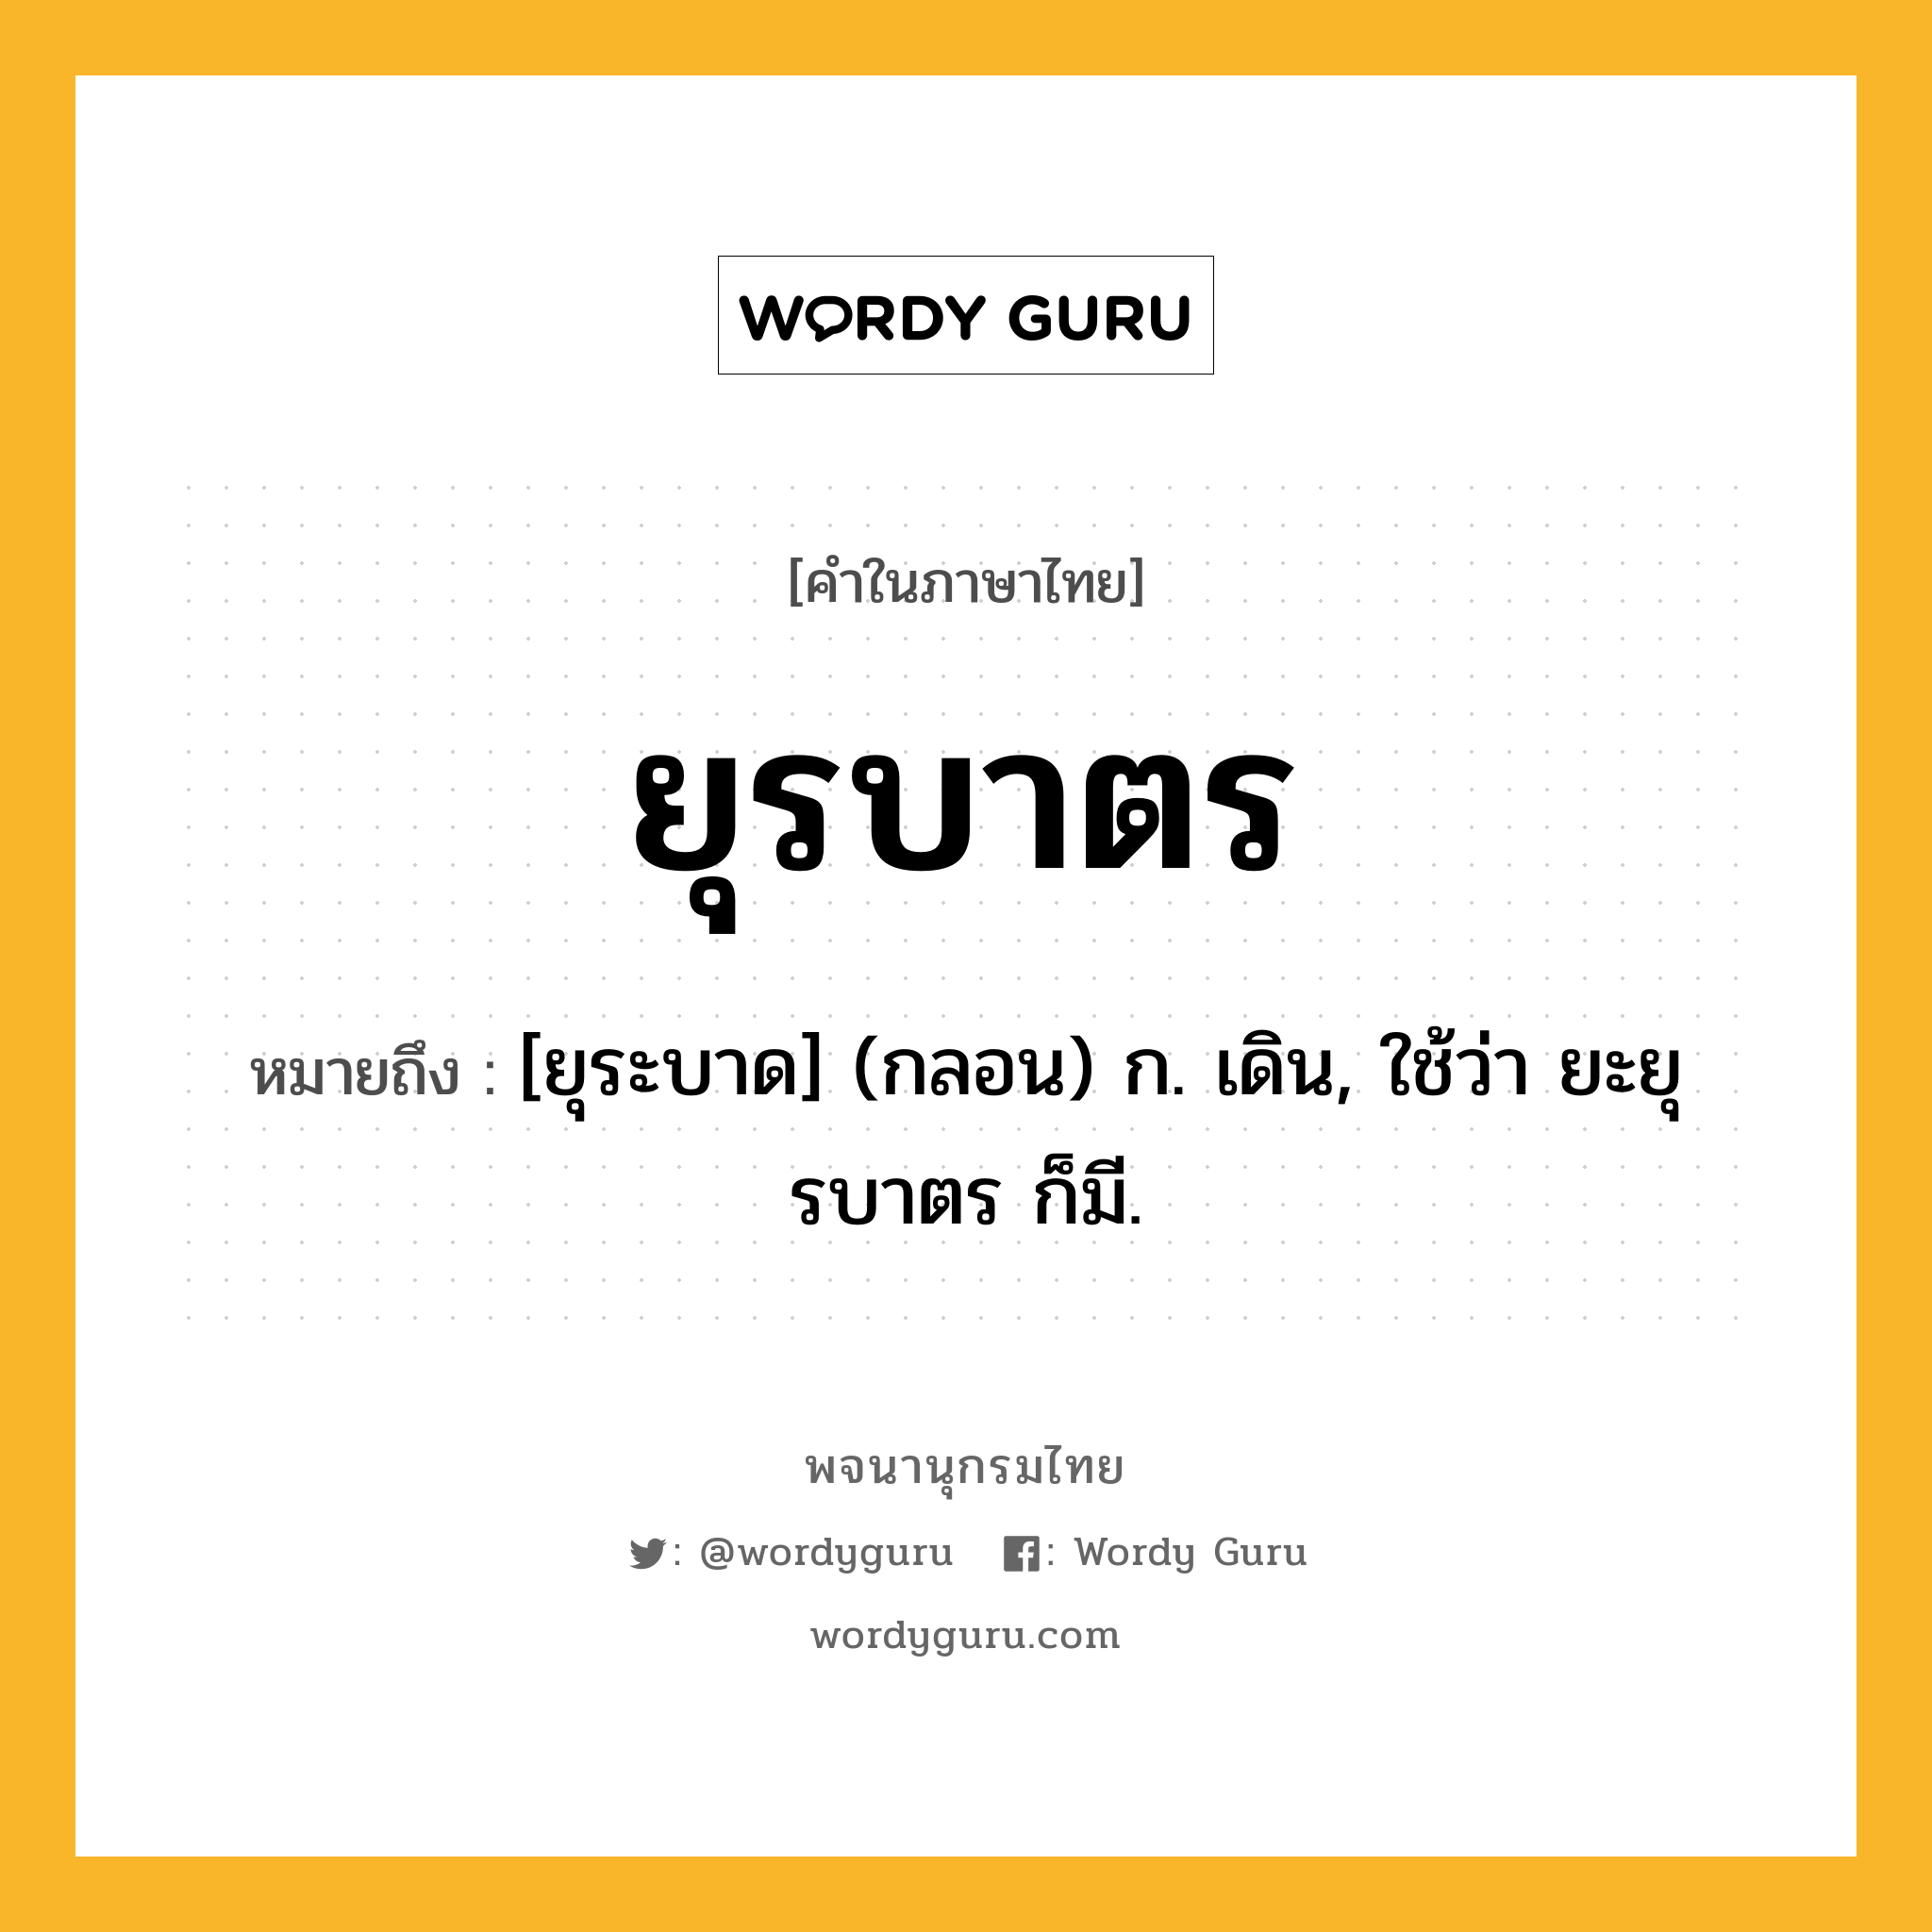 ยุรบาตร ความหมาย หมายถึงอะไร?, คำในภาษาไทย ยุรบาตร หมายถึง [ยุระบาด] (กลอน) ก. เดิน, ใช้ว่า ยะยุรบาตร ก็มี.